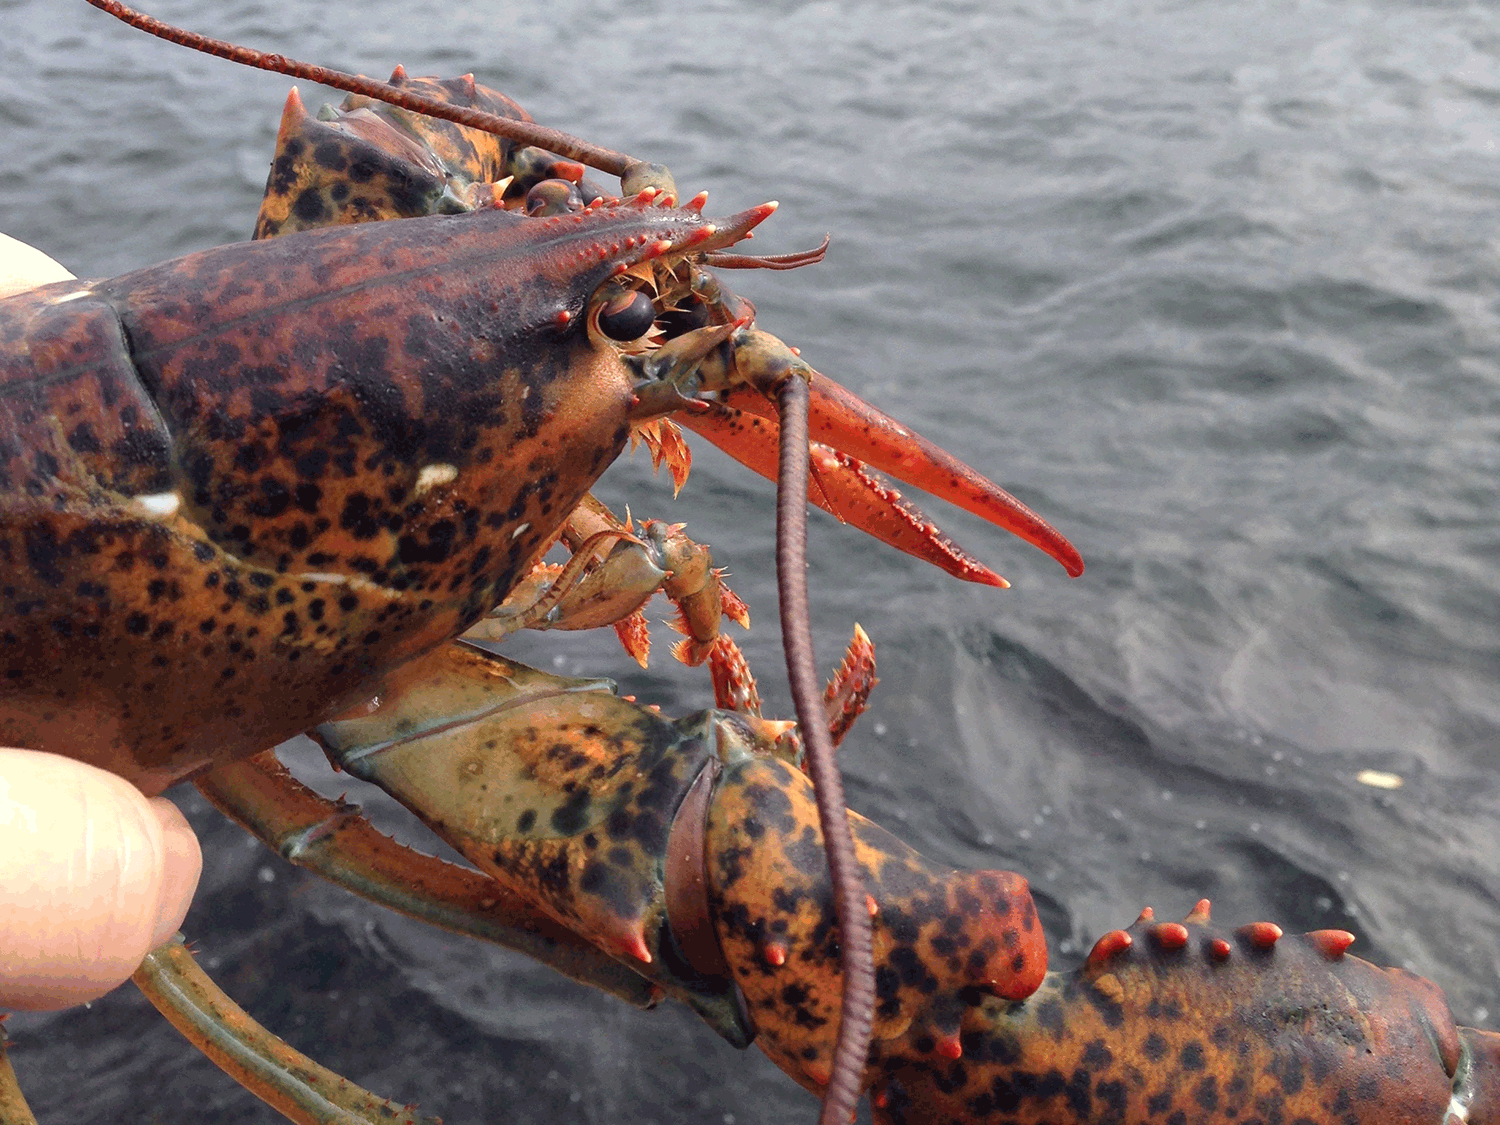 American lobster